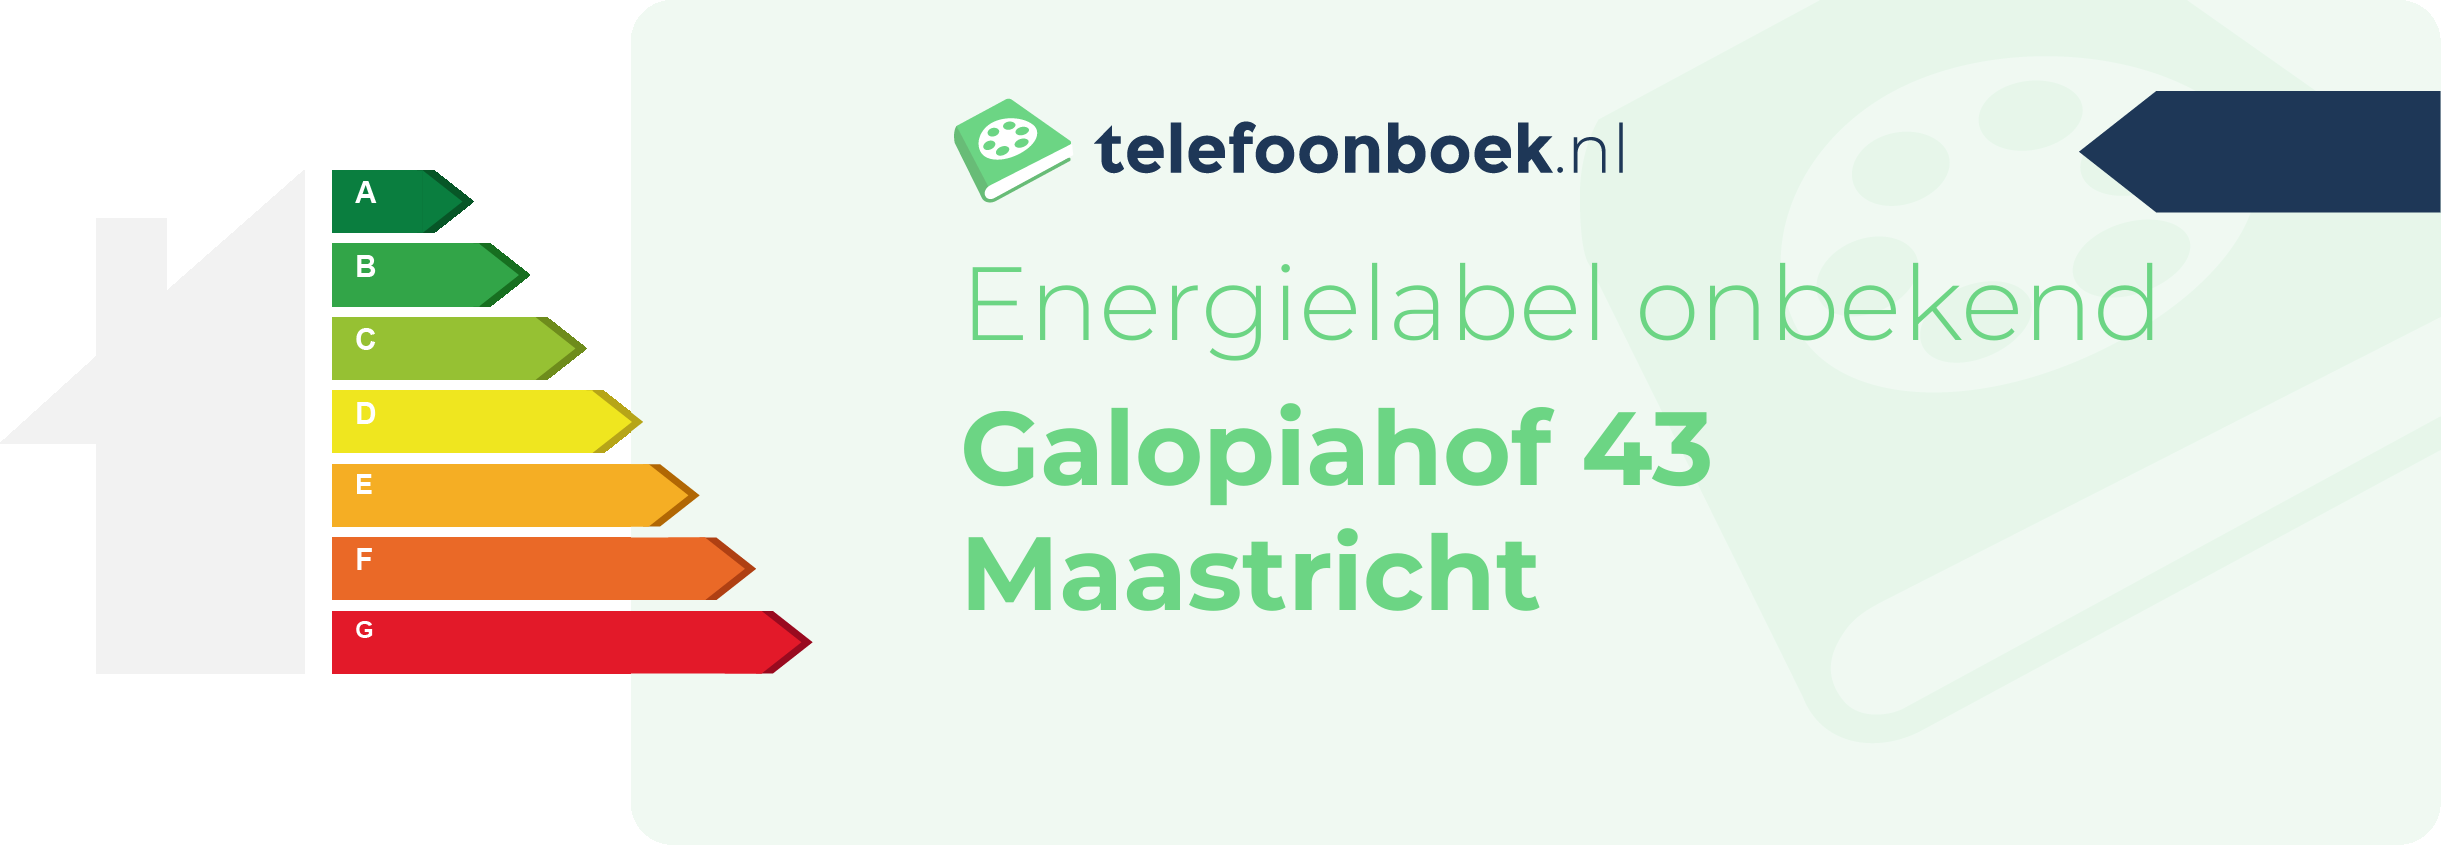 Energielabel Galopiahof 43 Maastricht